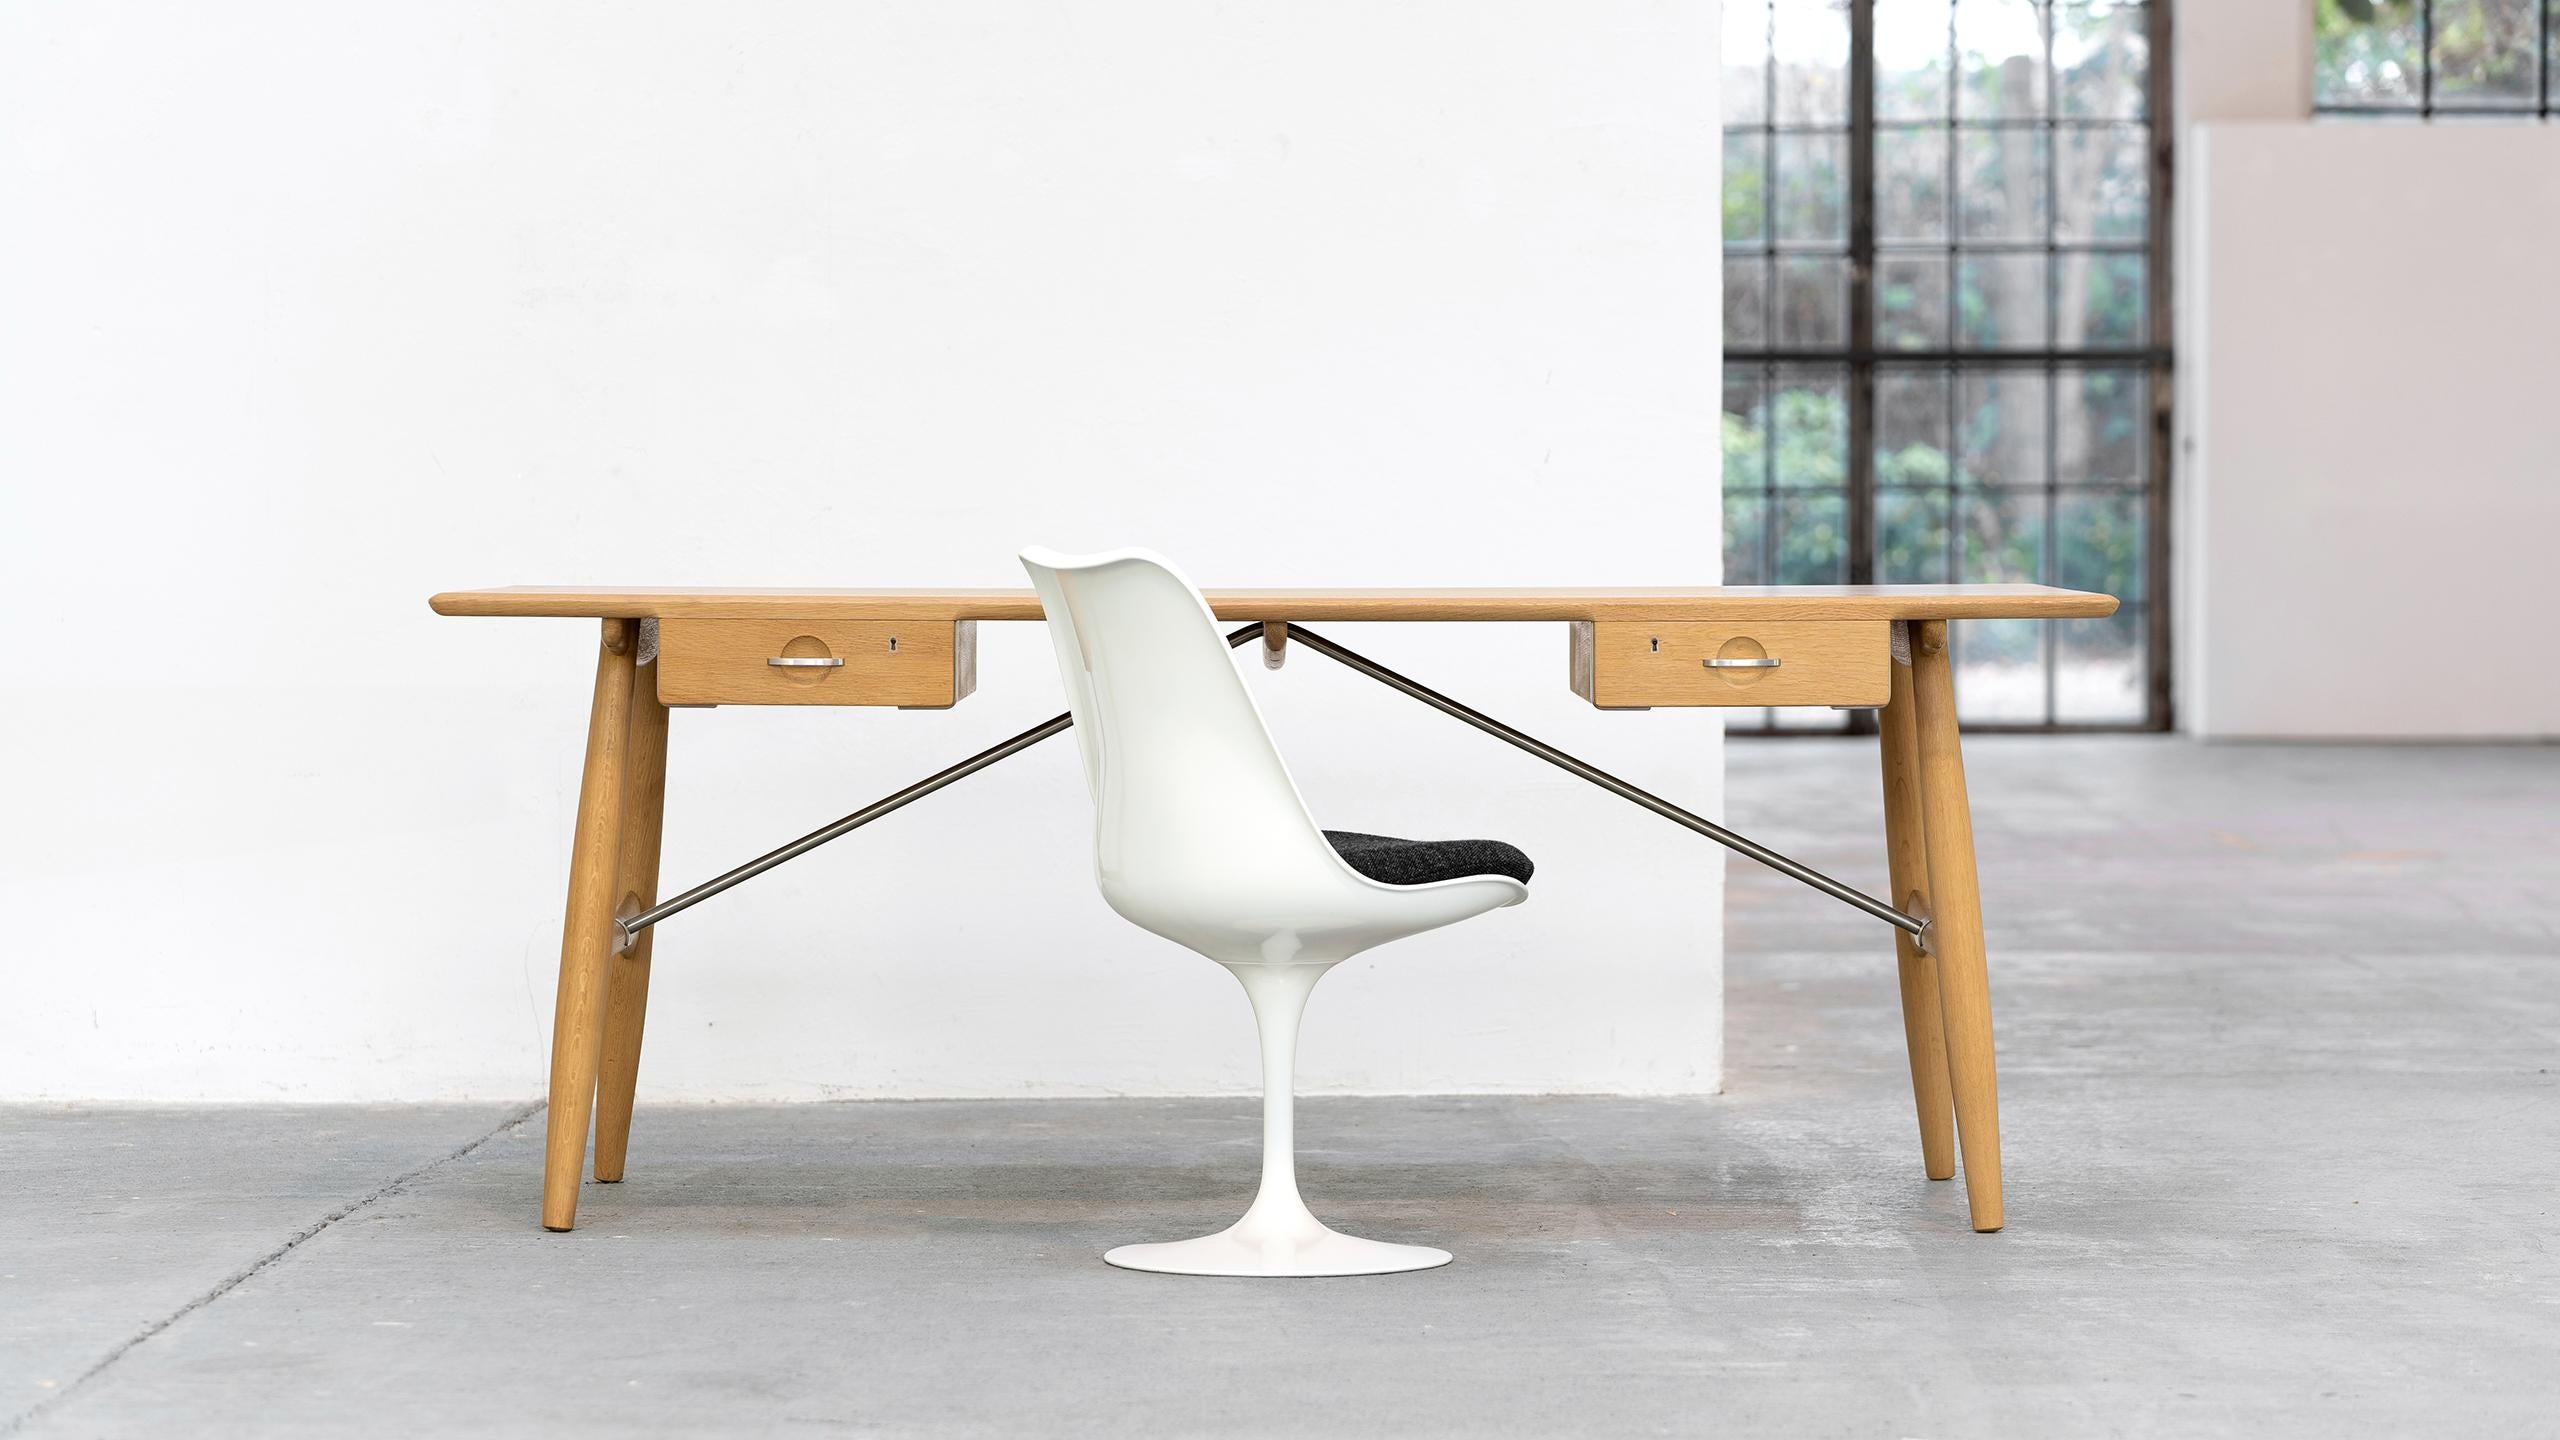 Hans J. Wegner a conçu l'extraordinaire bureau d'architecte pp571 en 1953, en complément de la chaise ronde (The Chair). 
Plus tard, en 1955, il a conçu la chaise pivotante, complétant ainsi une ligne de chefs-d'œuvre exclusifs, fonctionnels et